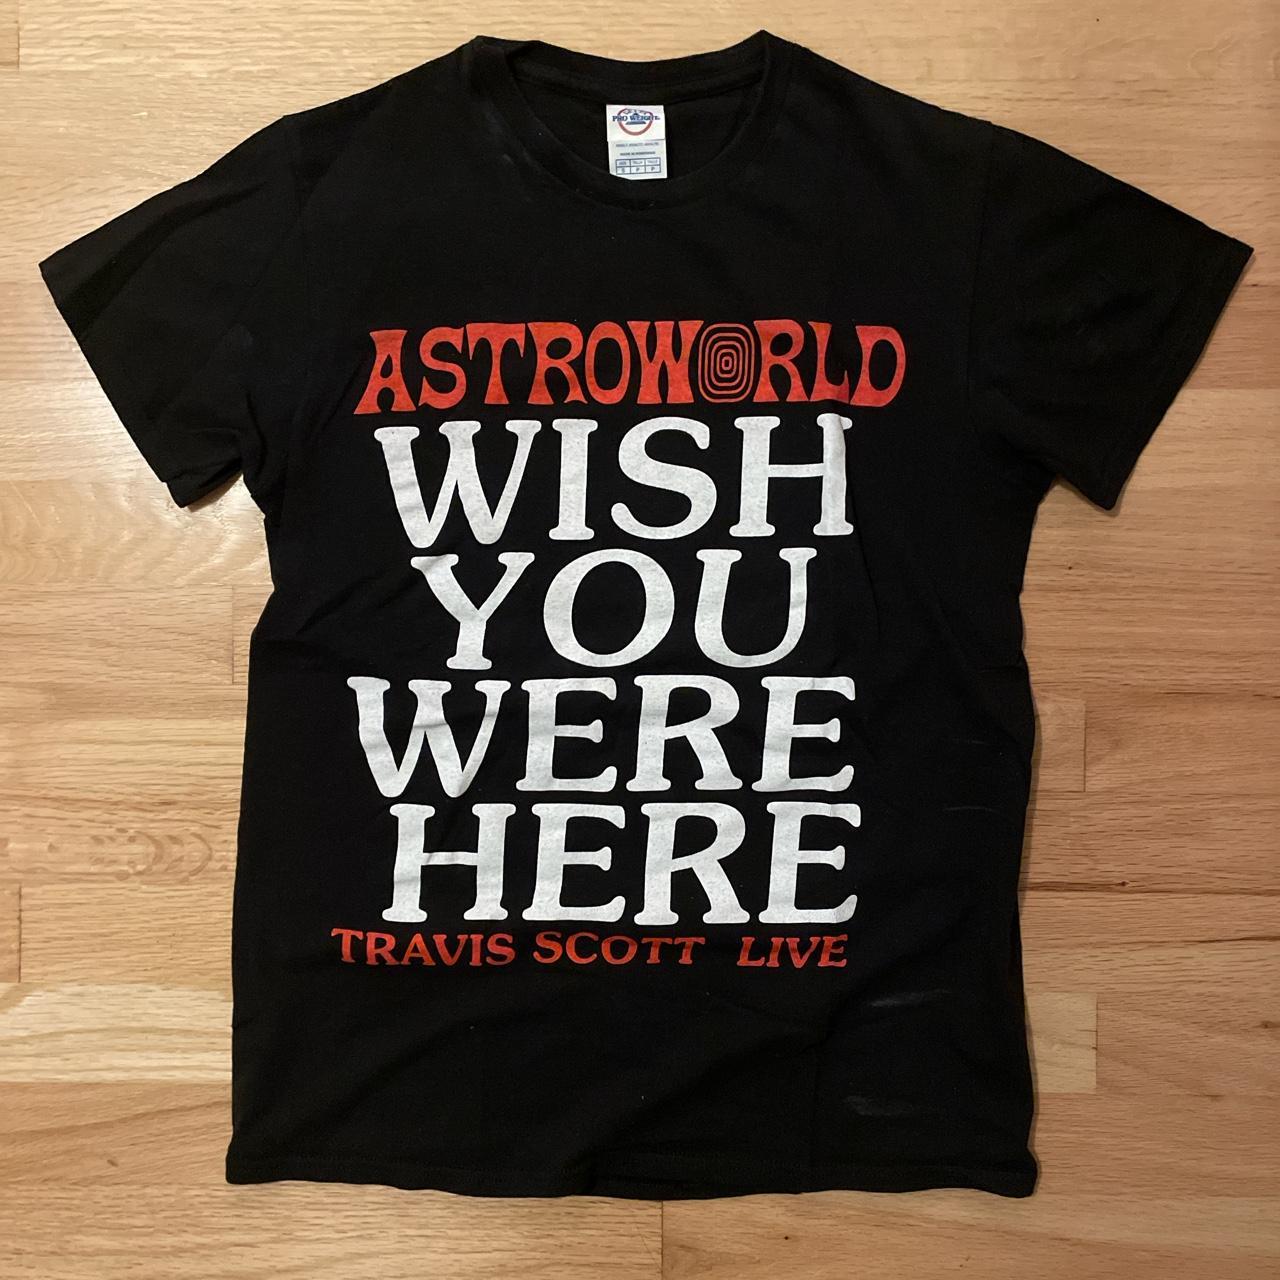 ASTROWORLD - BLACK TEE SHIRT TRAVIS SCOTT ALBUM